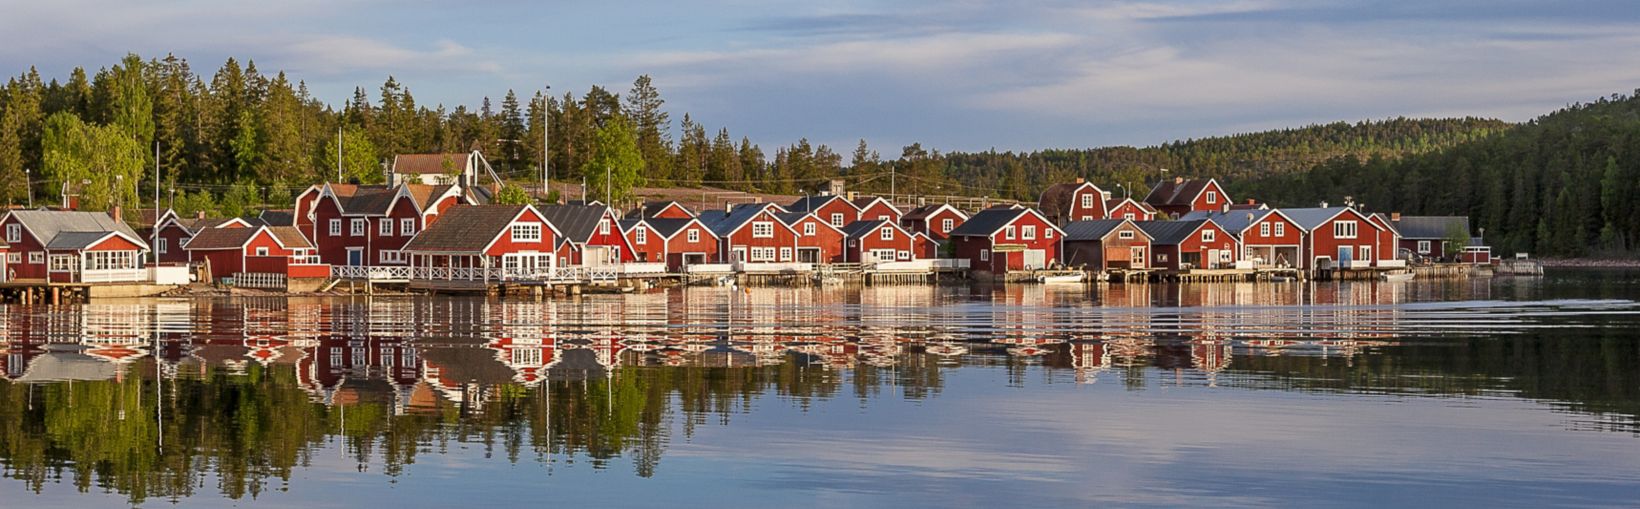 red houses at sunset in the  fishing village of Norfaellsviken, Höga Kusten, Sweden